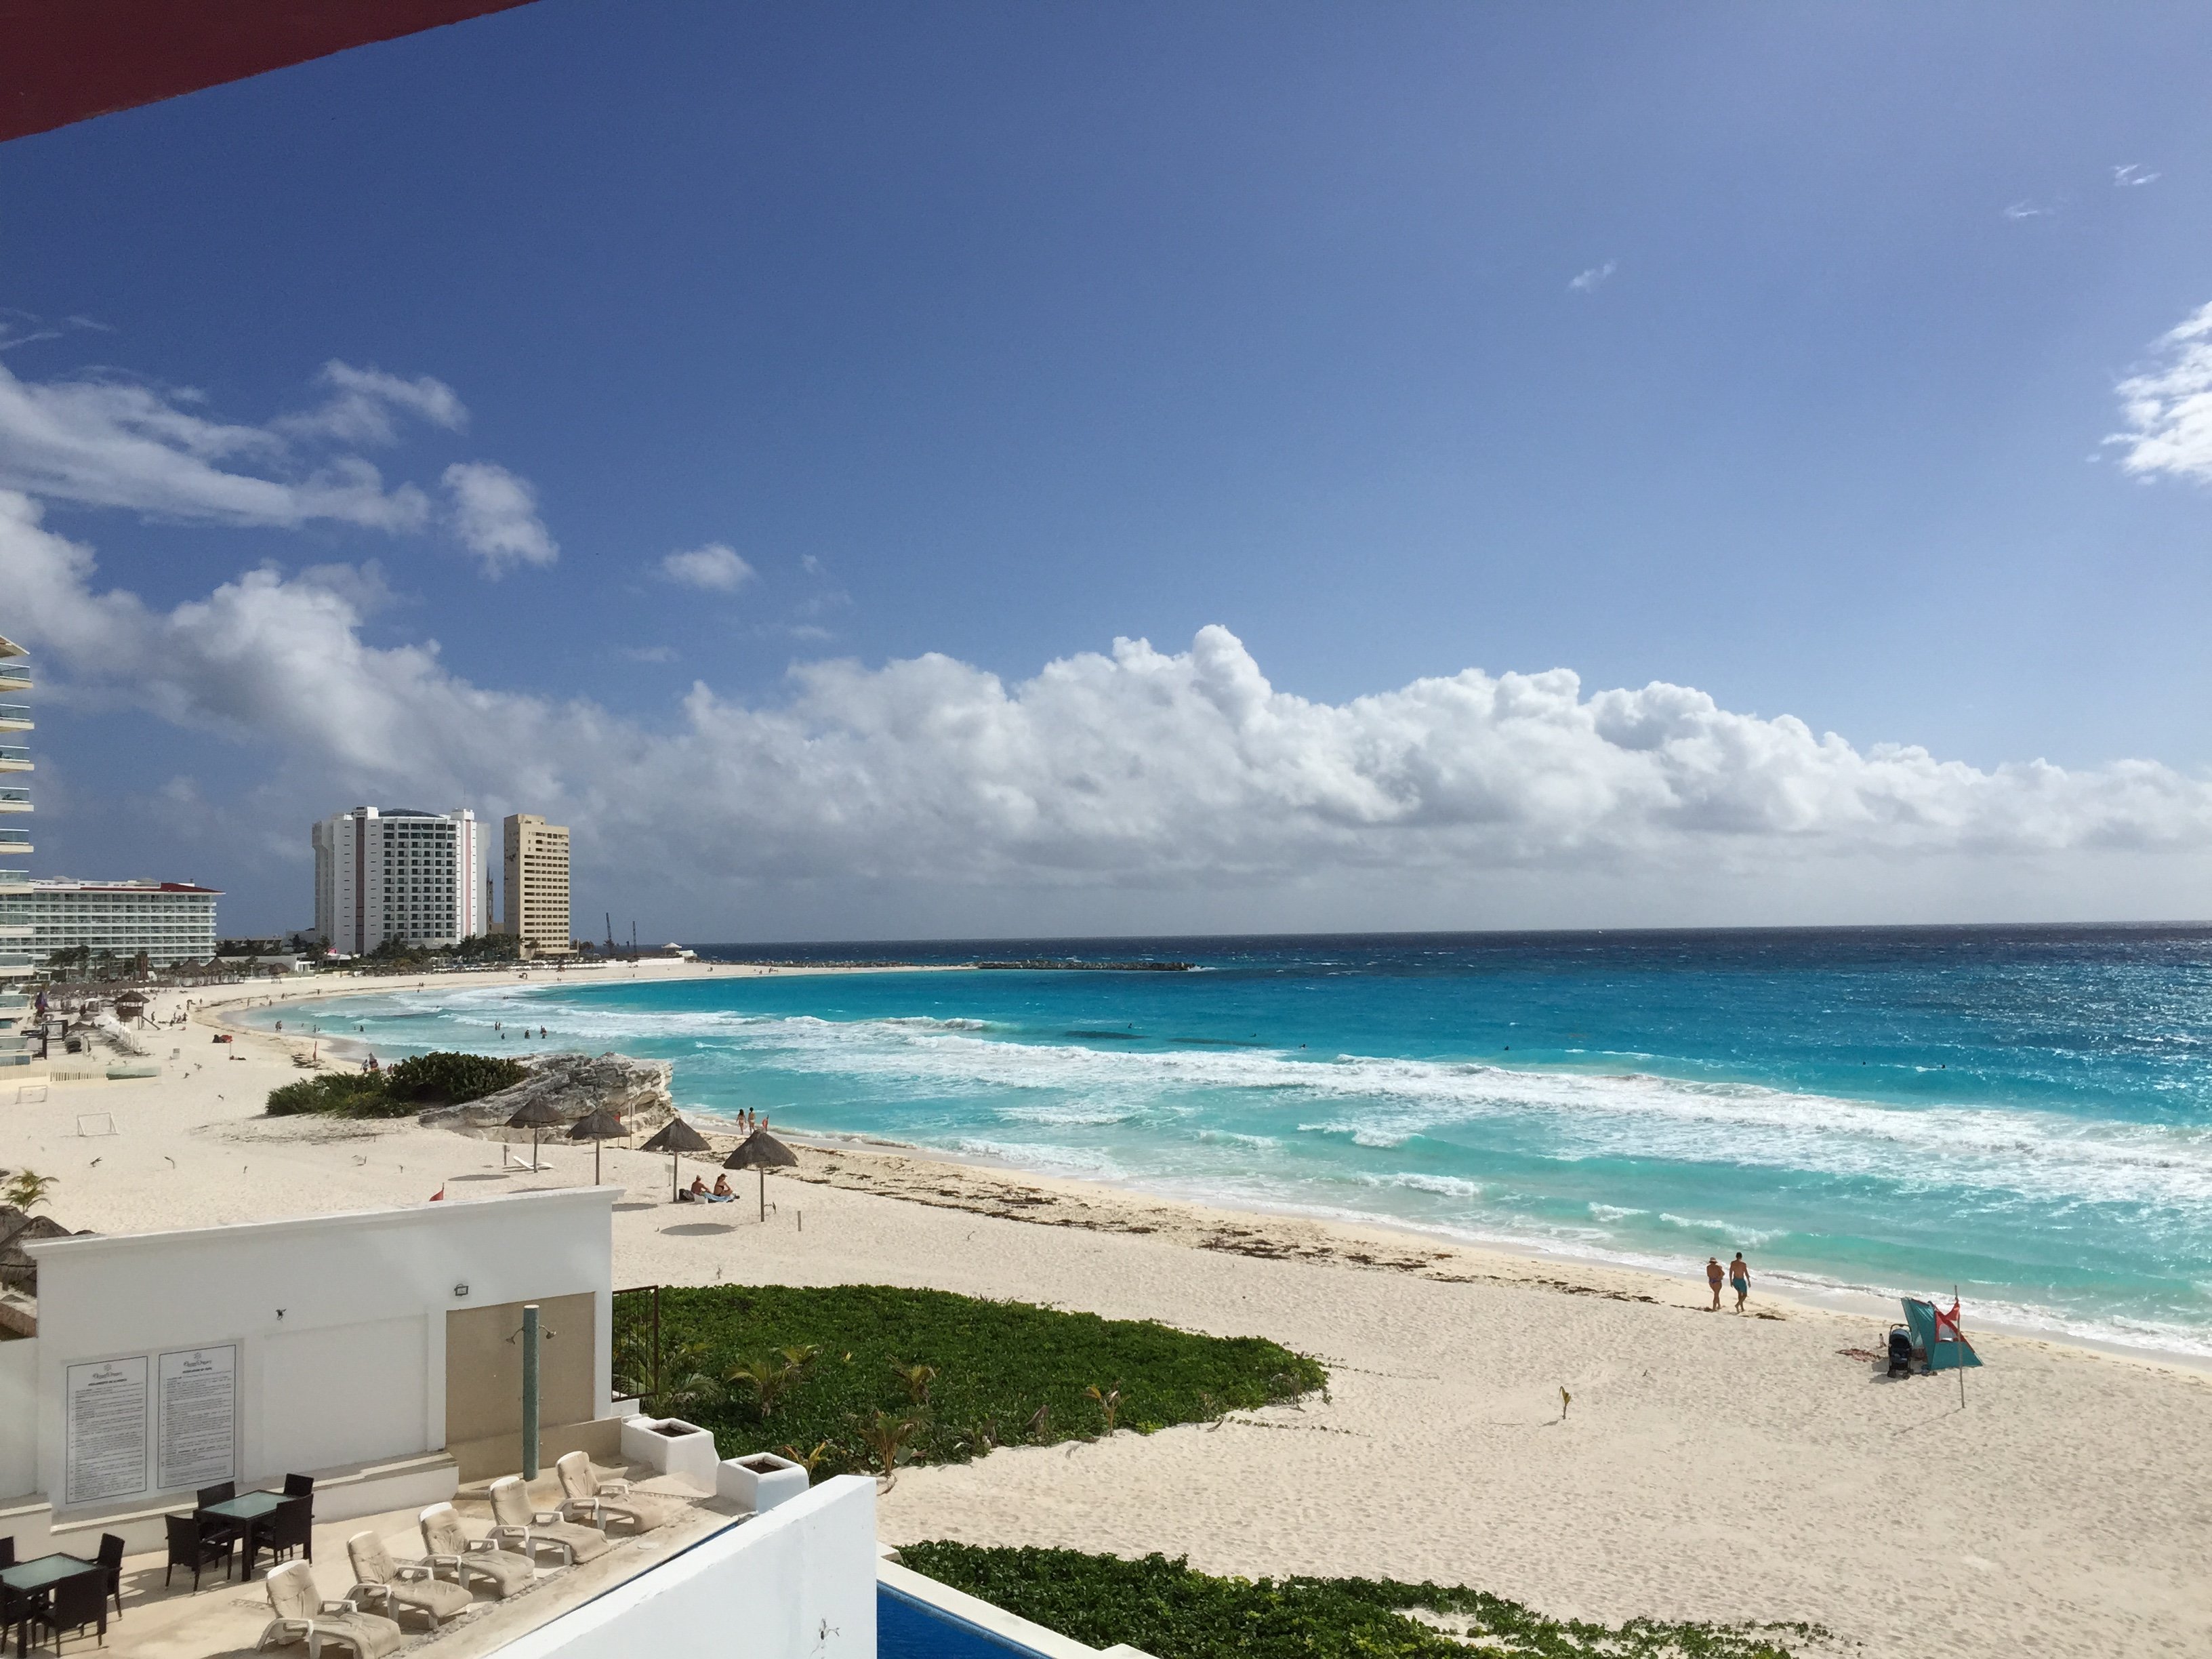 Cancun Beach Ocean View 2015